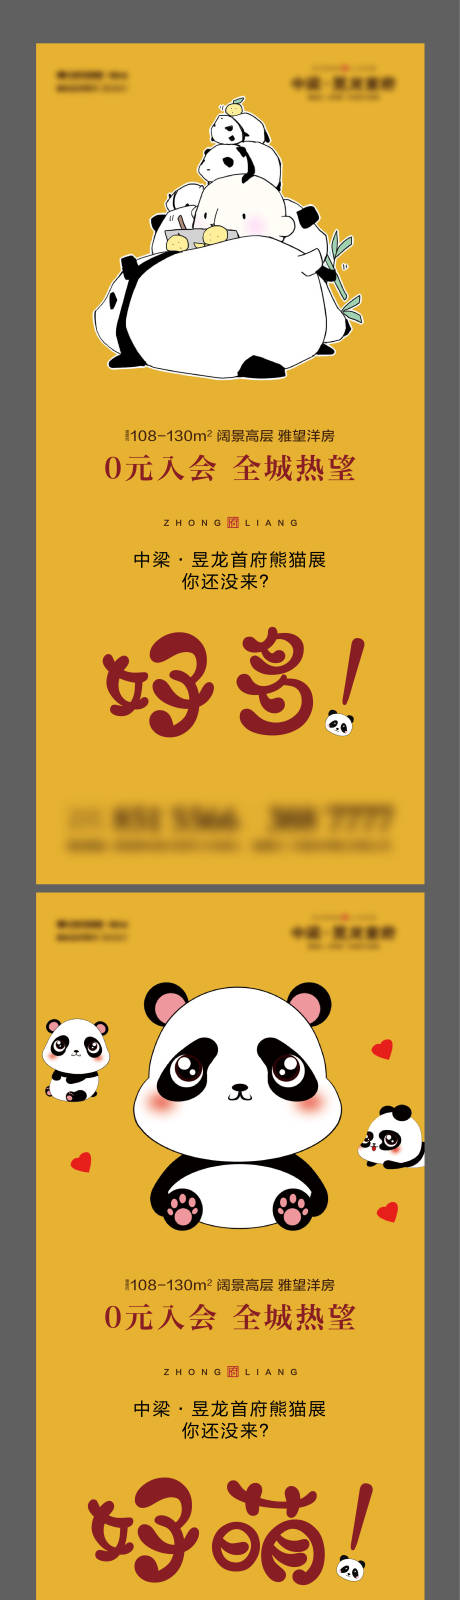 房地产趣味熊猫展活动海报系列